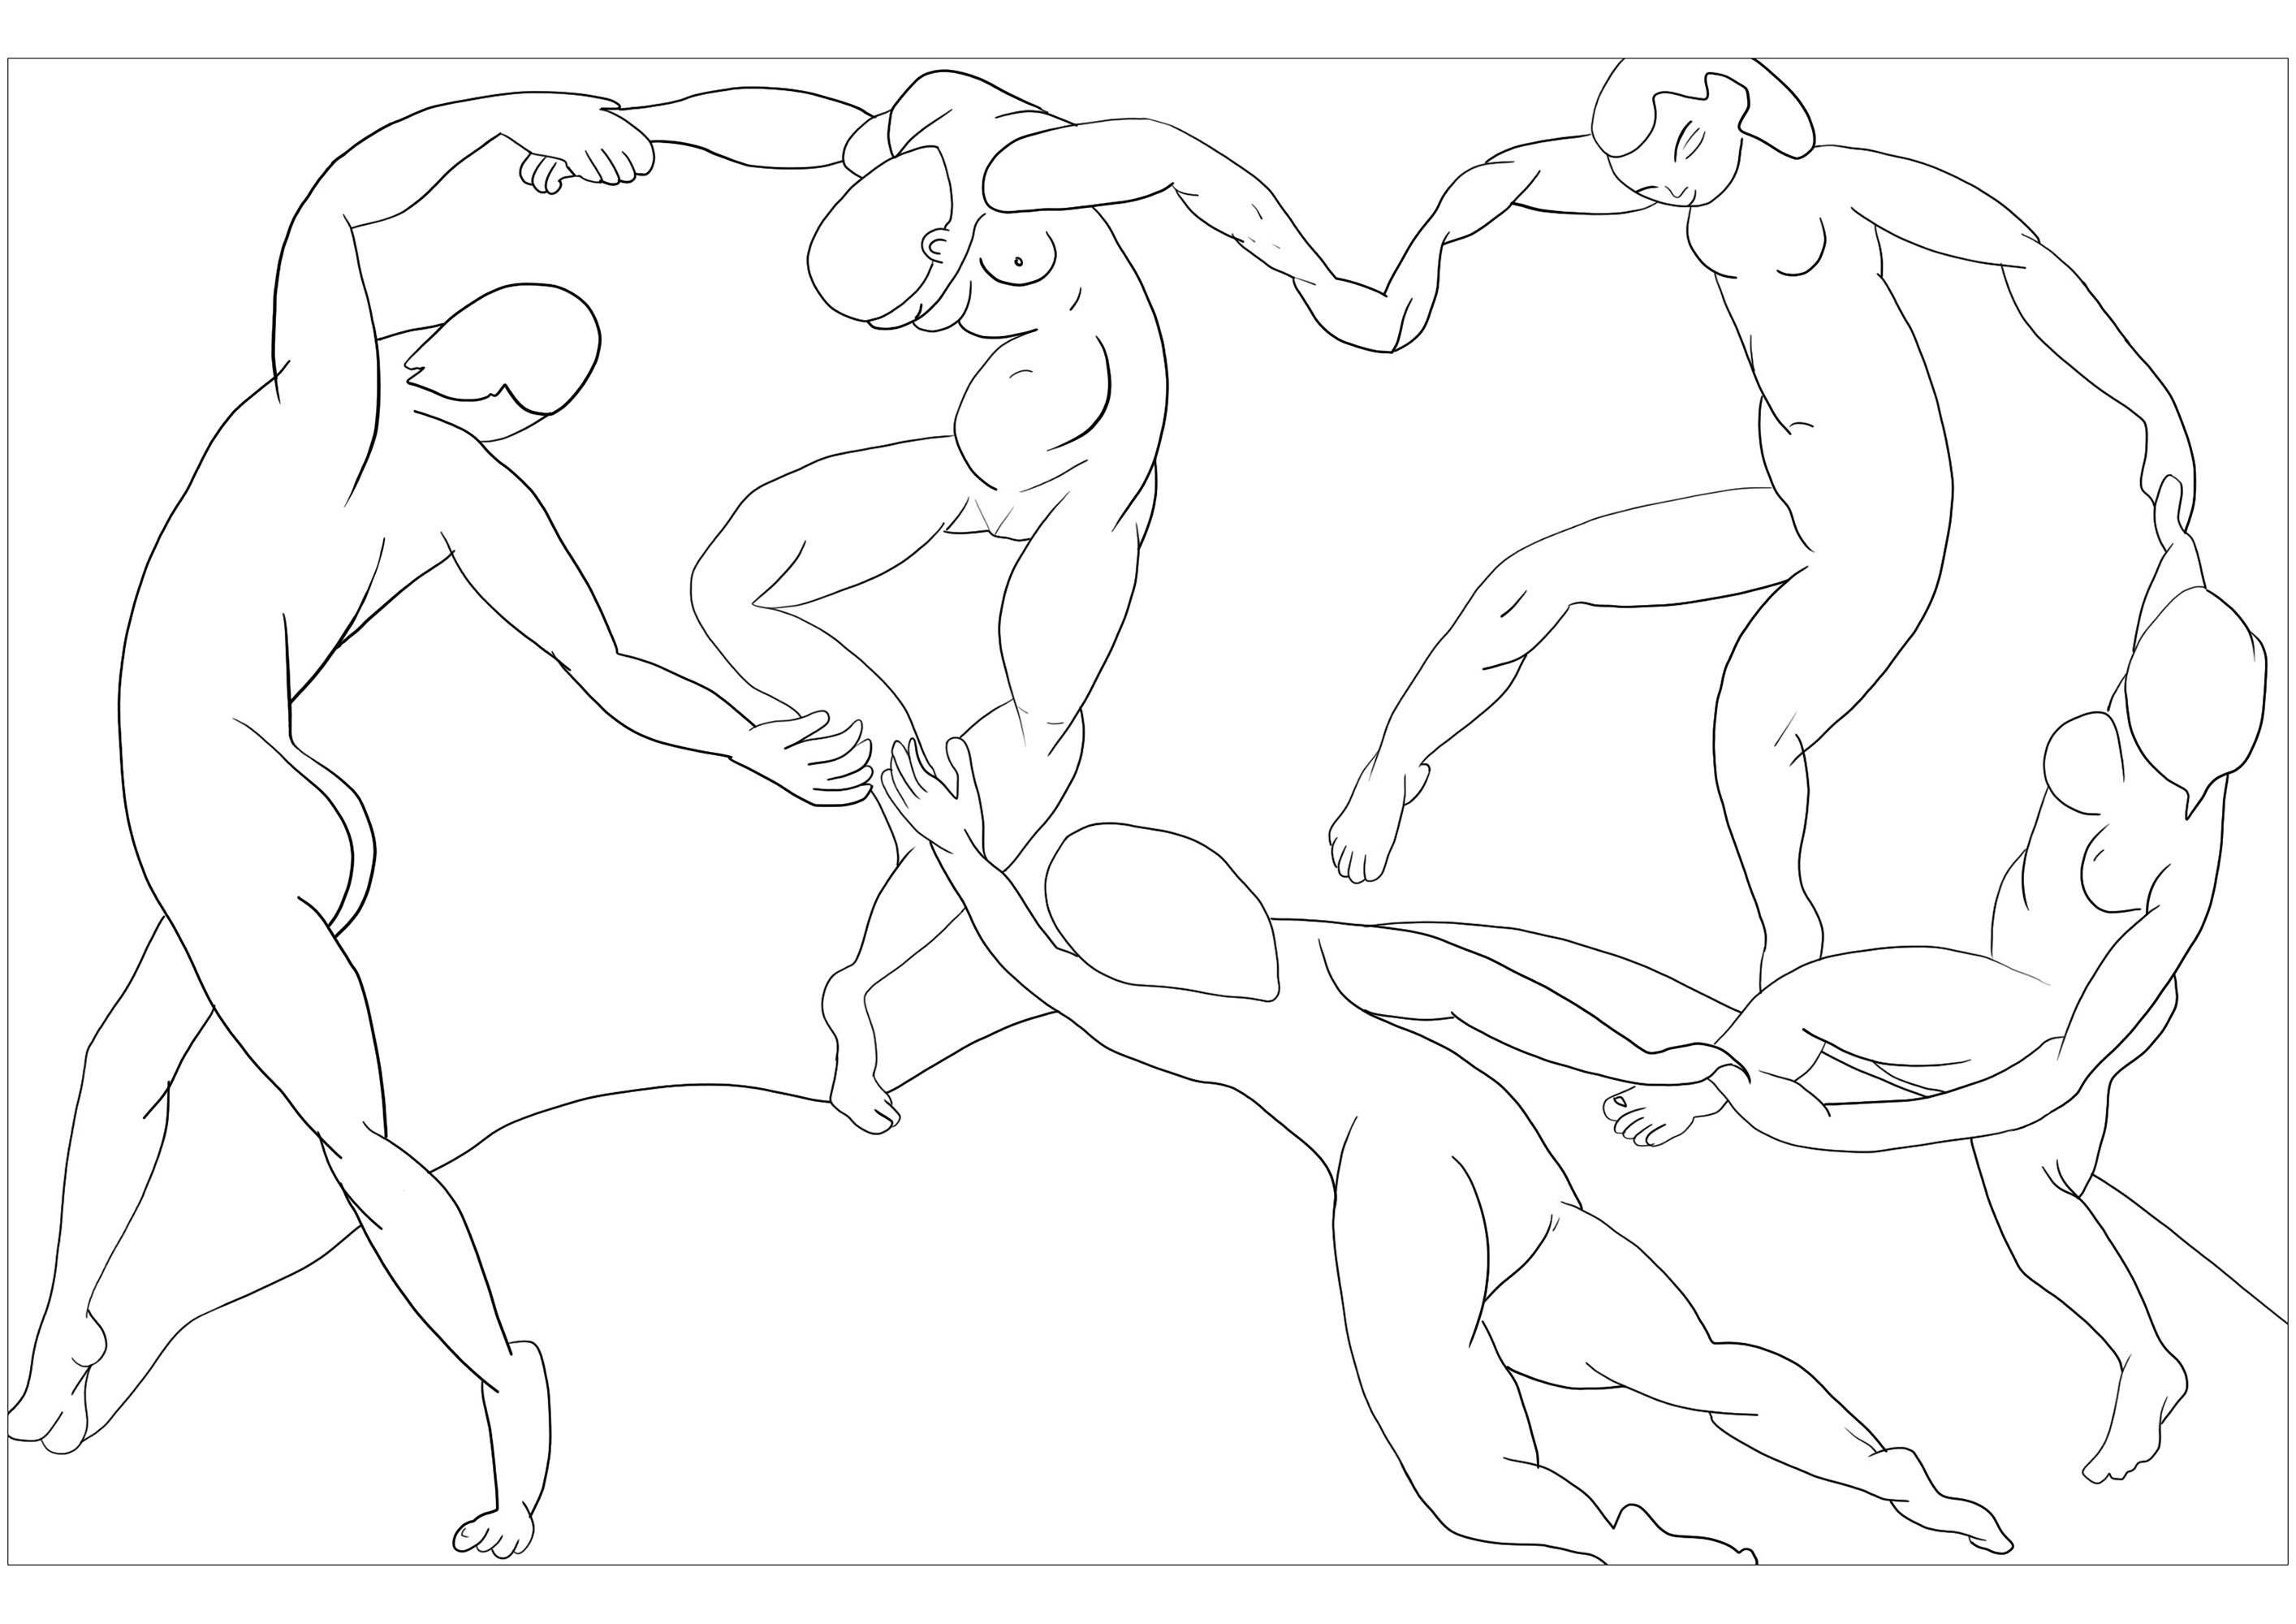 Coloriage créé à partir du tableau d'Henri Matisse : La Danse (1909-1910). Ce coloriage pour enfant est inspiré du célèbre tableau de Henri Matisse, La Danse (1909-1910). Il est composé de cinq personnages dansant, représentés par des formes géométriques.Les lignes épurées créent une atmosphère joyeuse et invitent les enfants à laisser libre cours à leur imagination